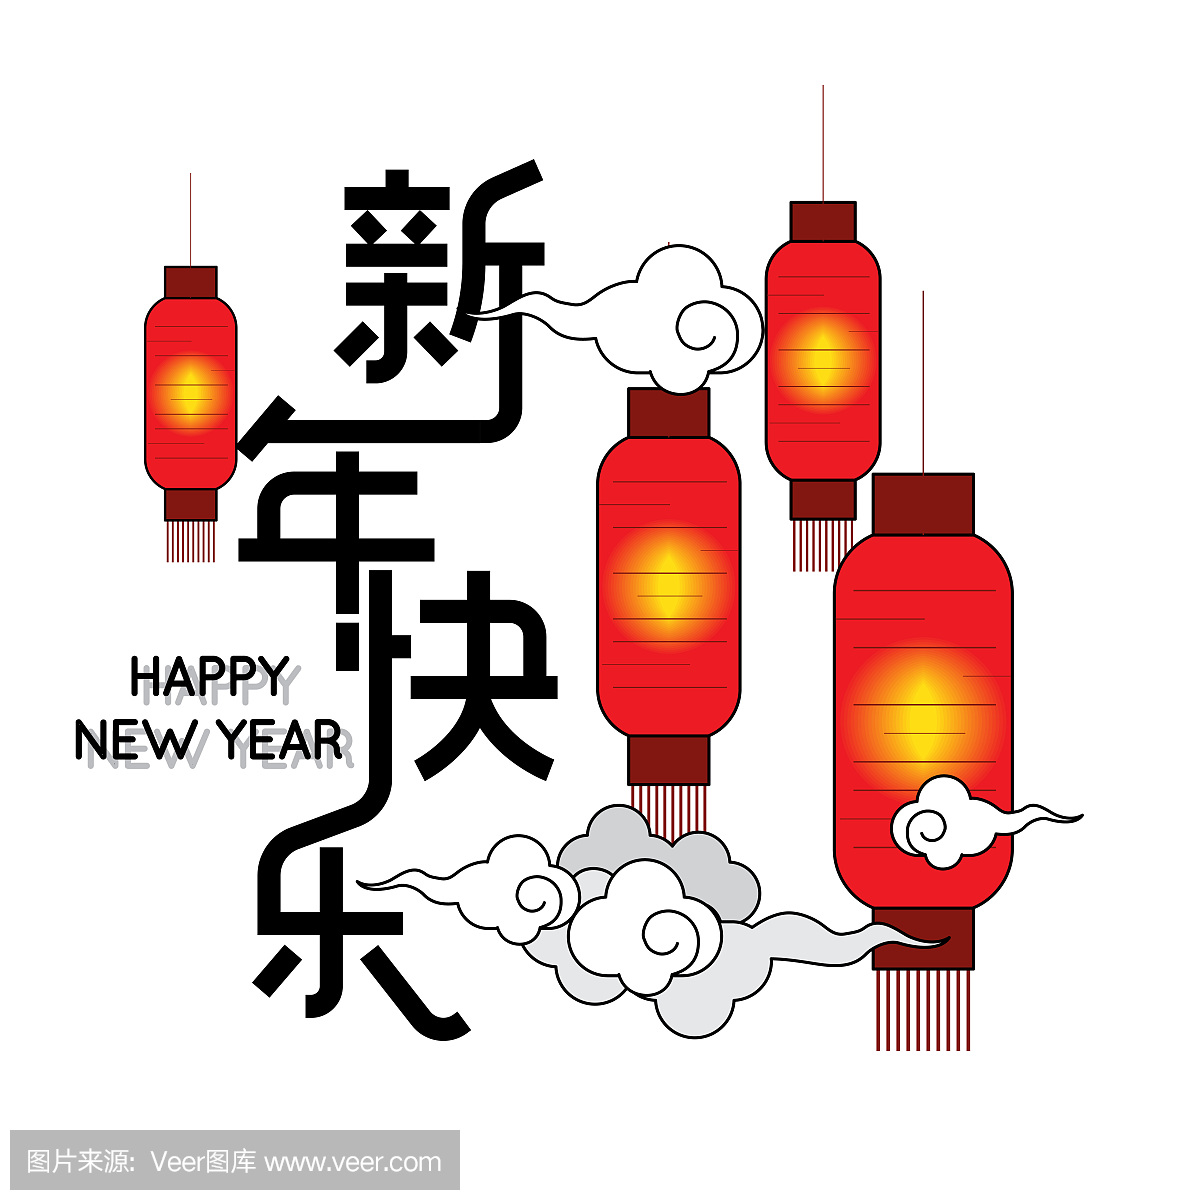 中国农历新年快乐中国农历新年背景与灯笼和云